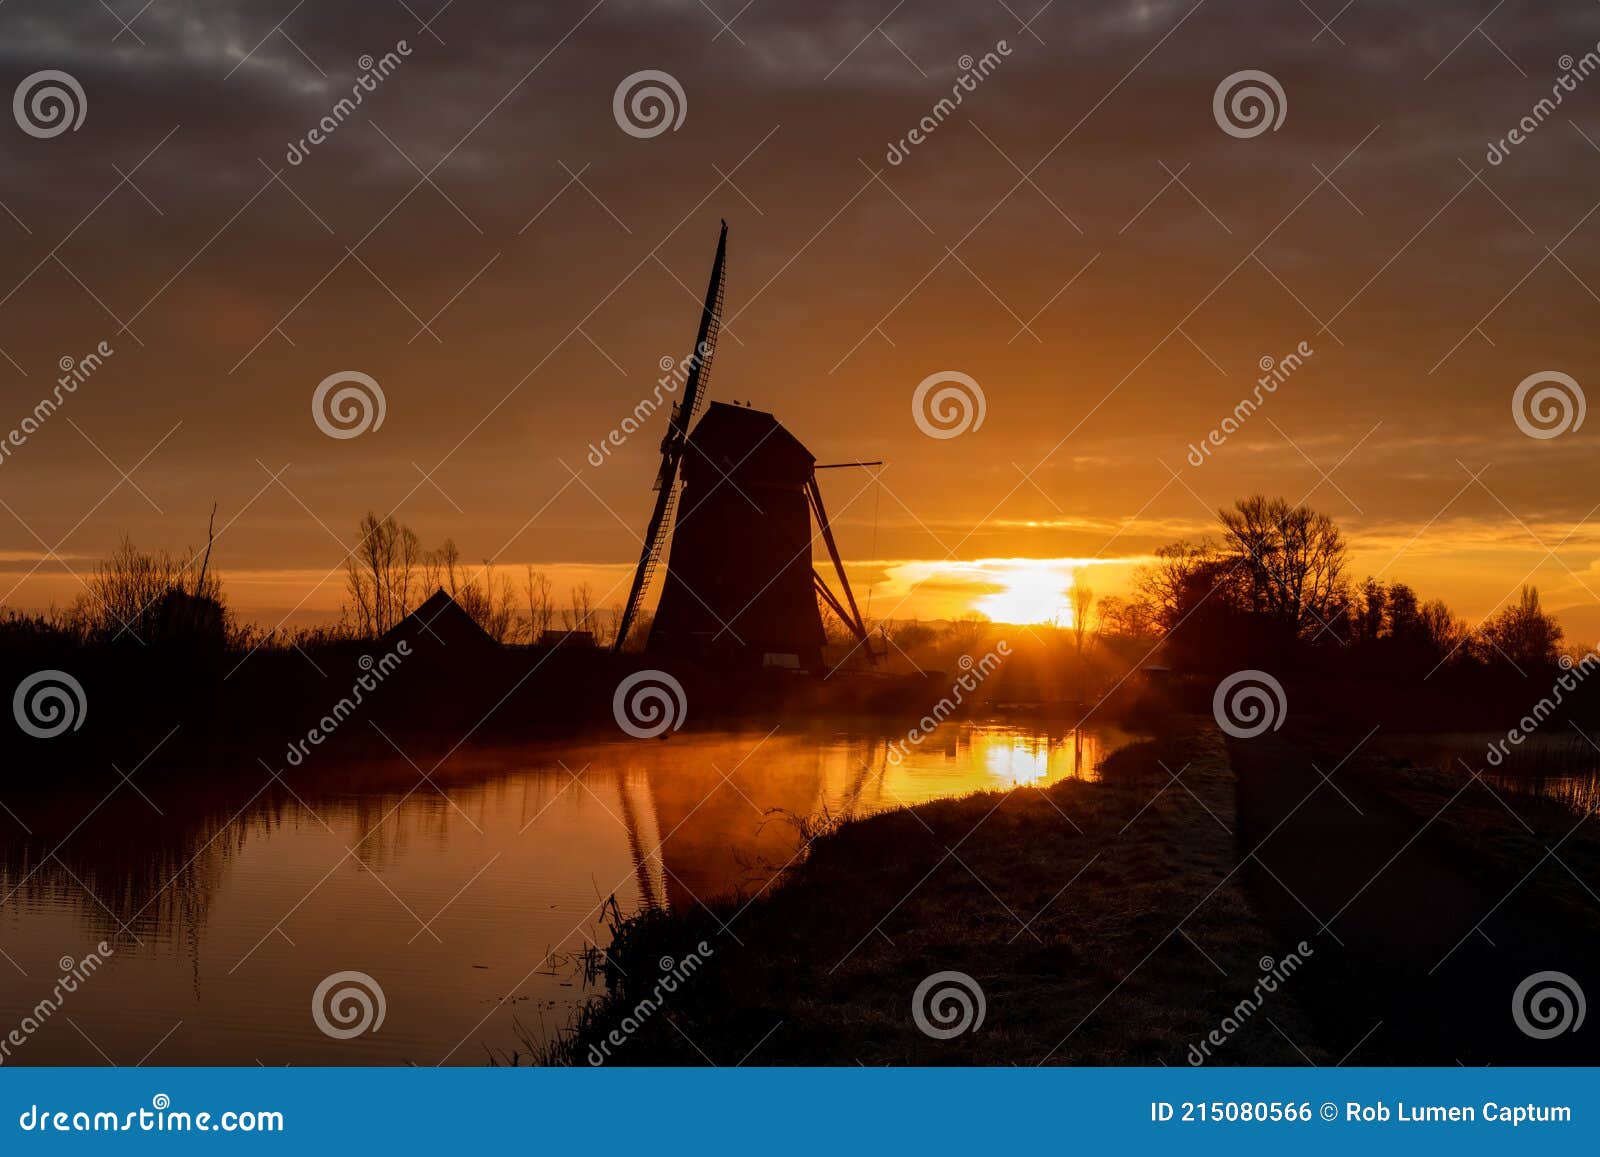 windmill at early sunrise, de rietveldse molen, hazerswoude dorp